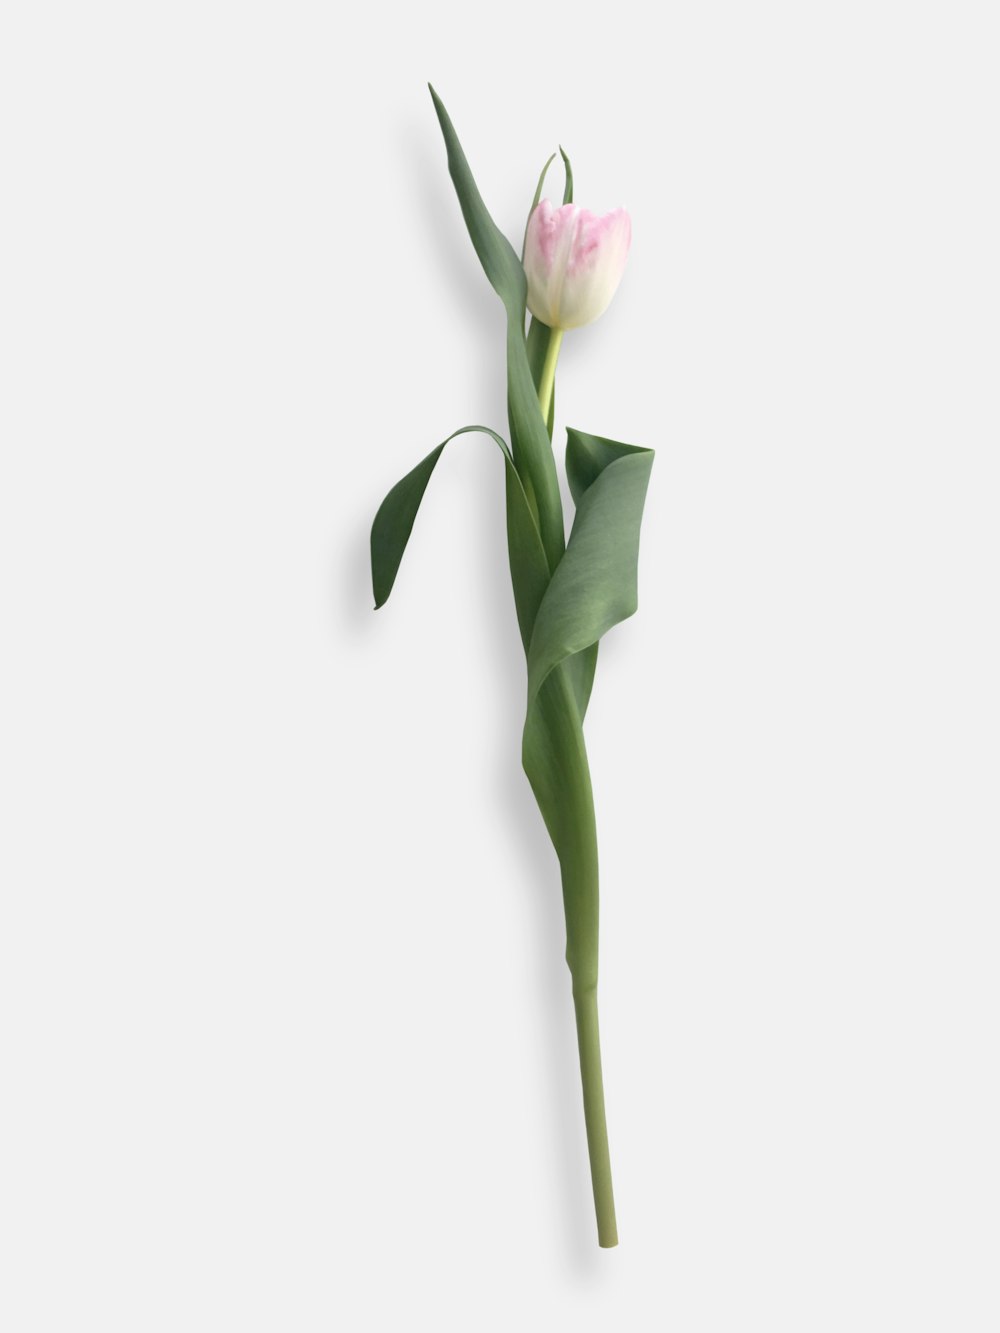 un solo tulipán rosa y blanco sobre fondo blanco